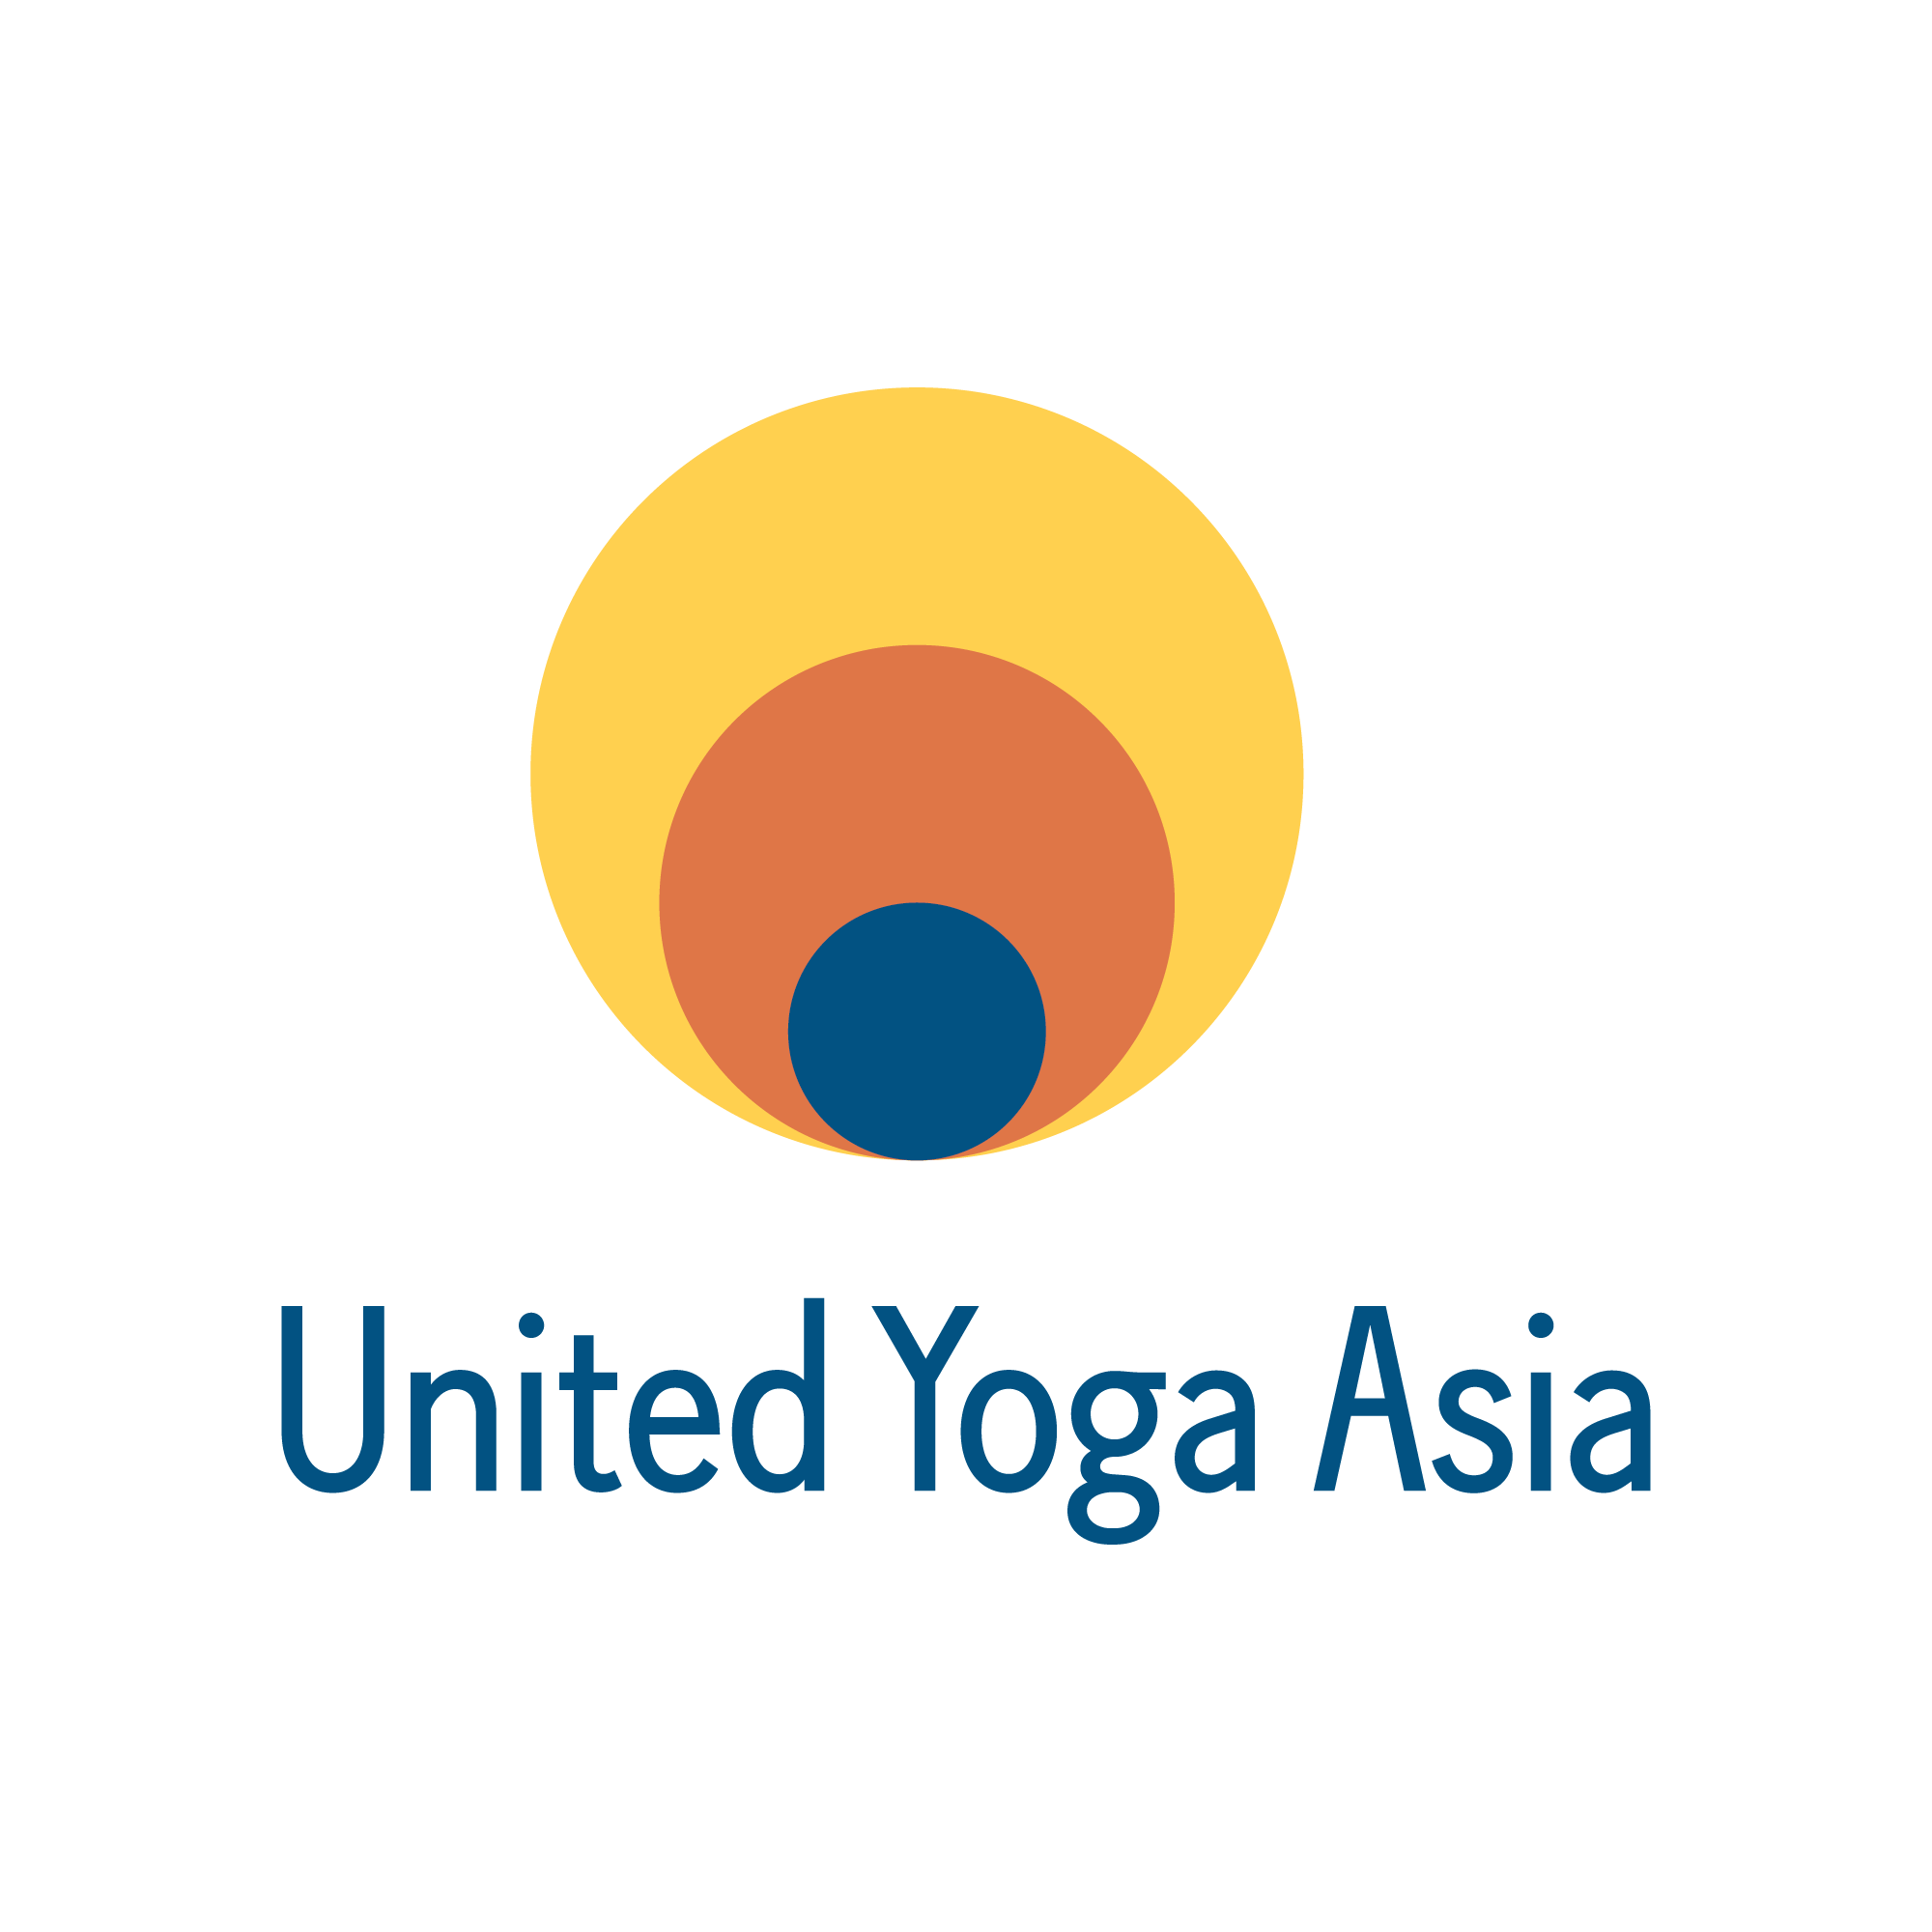 United Yoga Asia